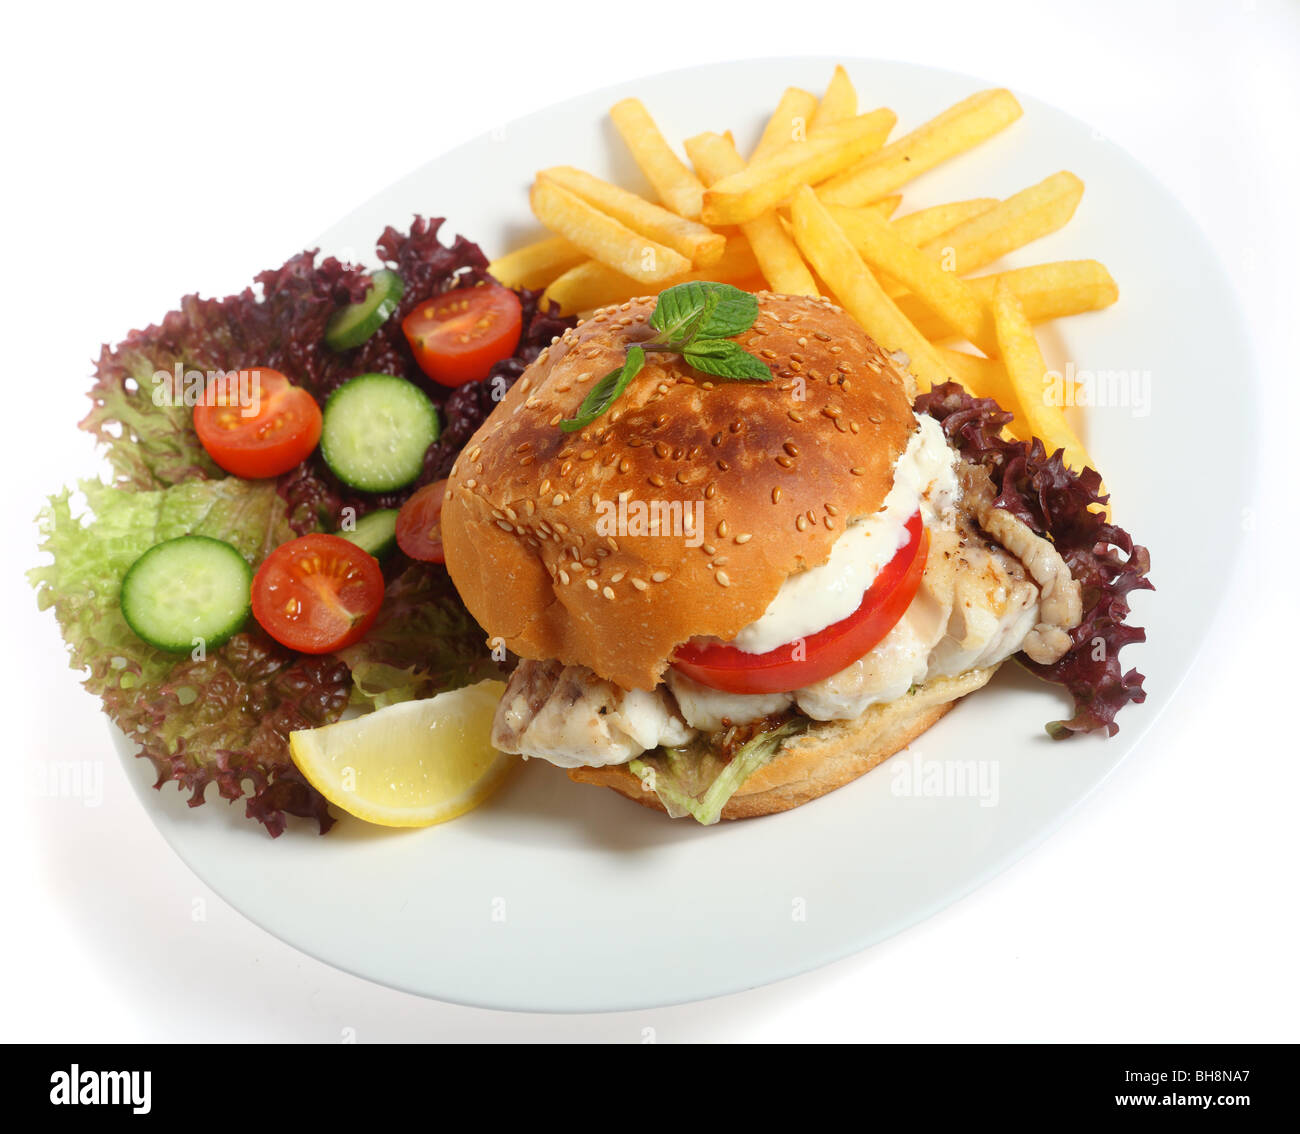 Eine Burger-Brötchen gefüllt mit einem Filet vom gebratenen Hamour Fisch mit Salat und Pommes Frites (oder Pommes frites) Stockfoto